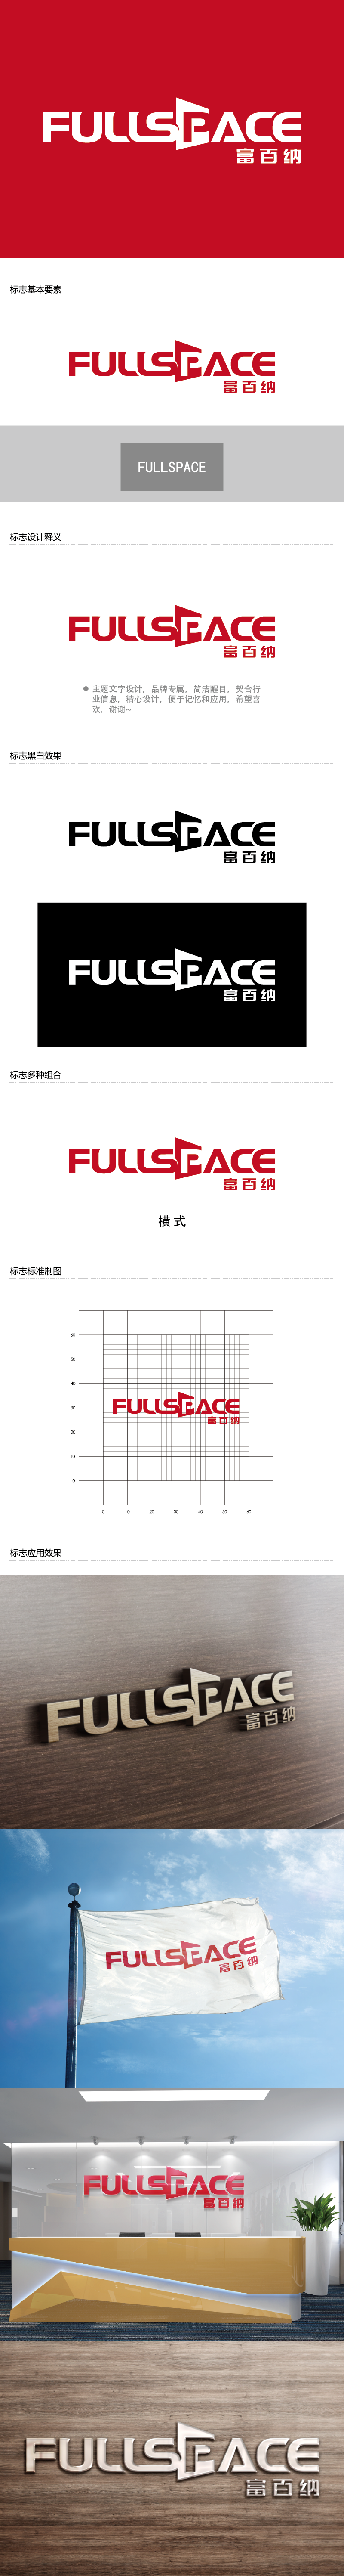 王涛的FullSpace富百纳logo设计